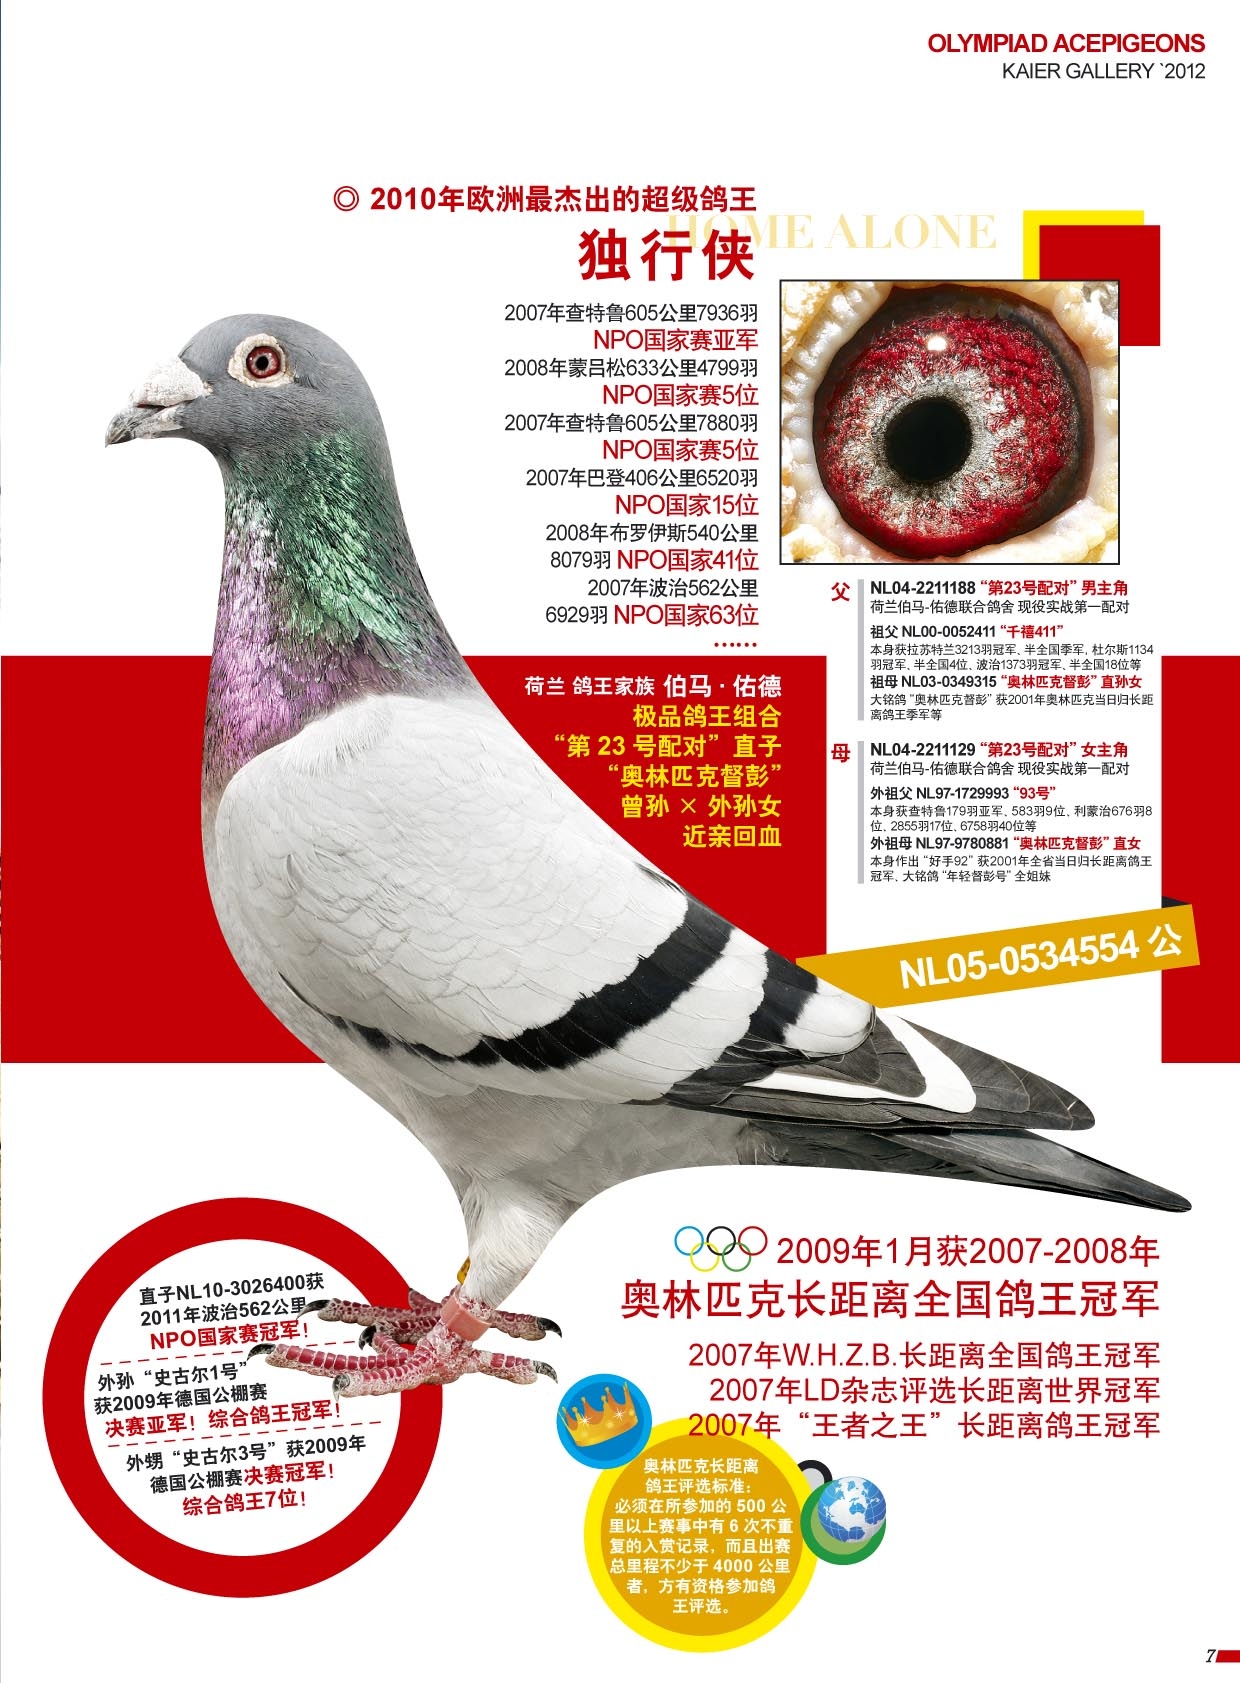 一对种鸽近500万，北京壹号鸽舍豪华种鸽阵容！